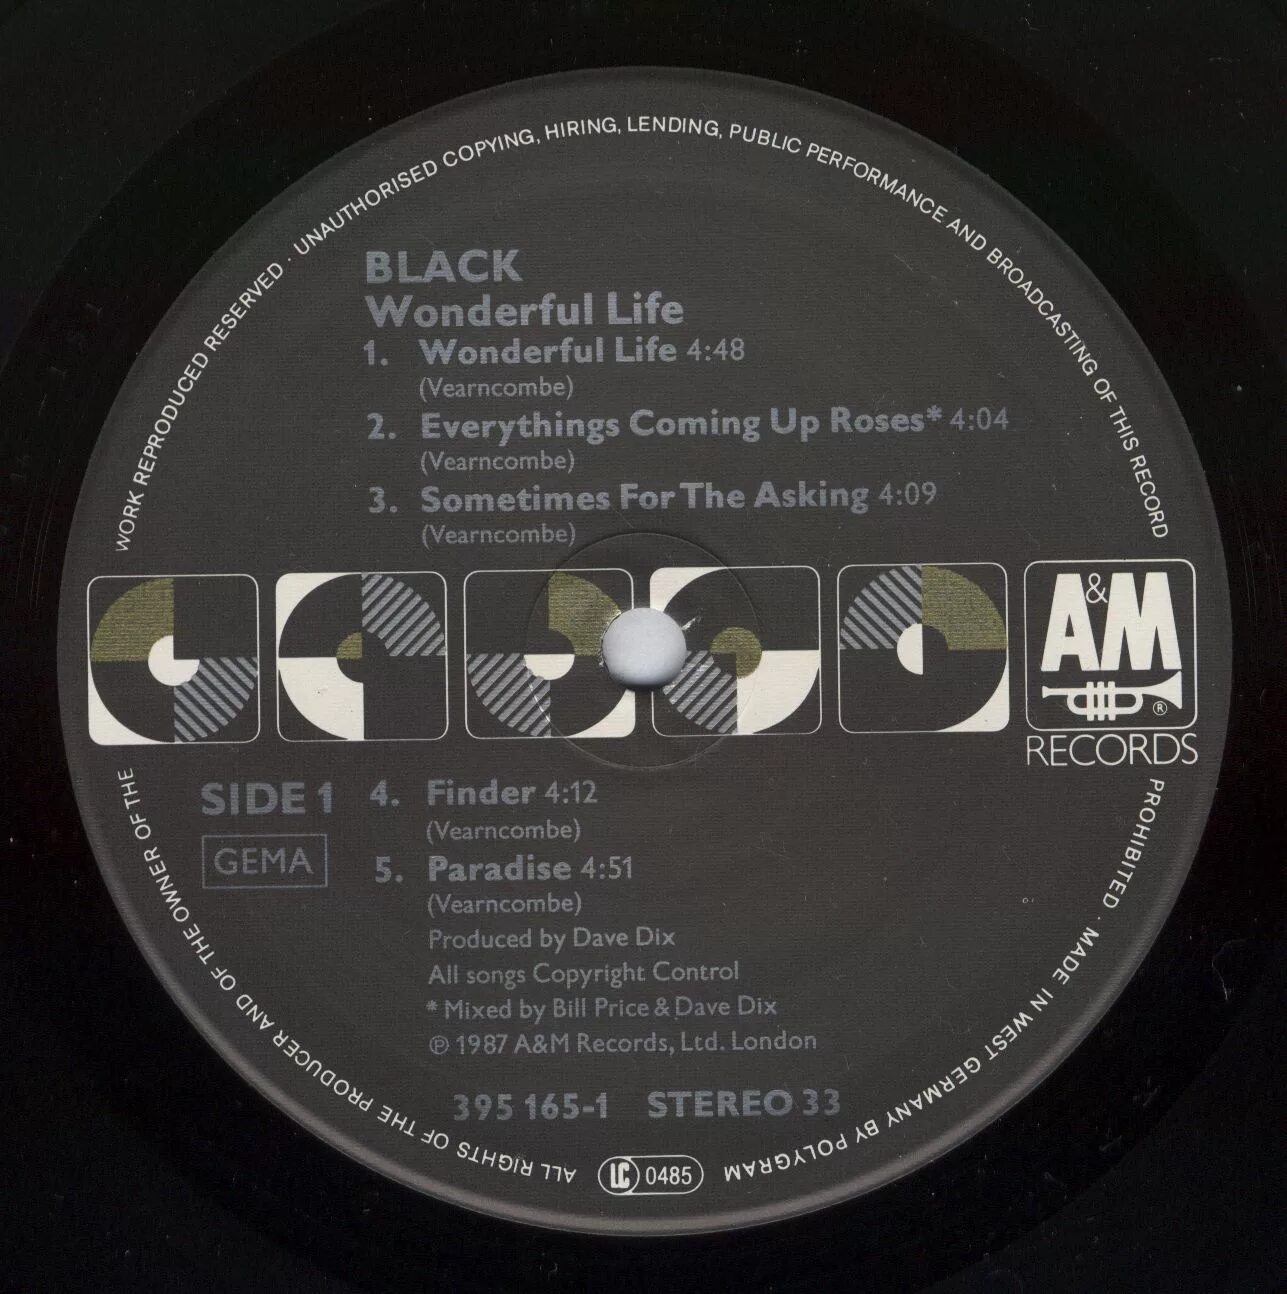 Вандефул лайф слушать. Вандерфул лайф. Black wonderful Life album. Black wonderful Life 1987. Wonderful Life песня.